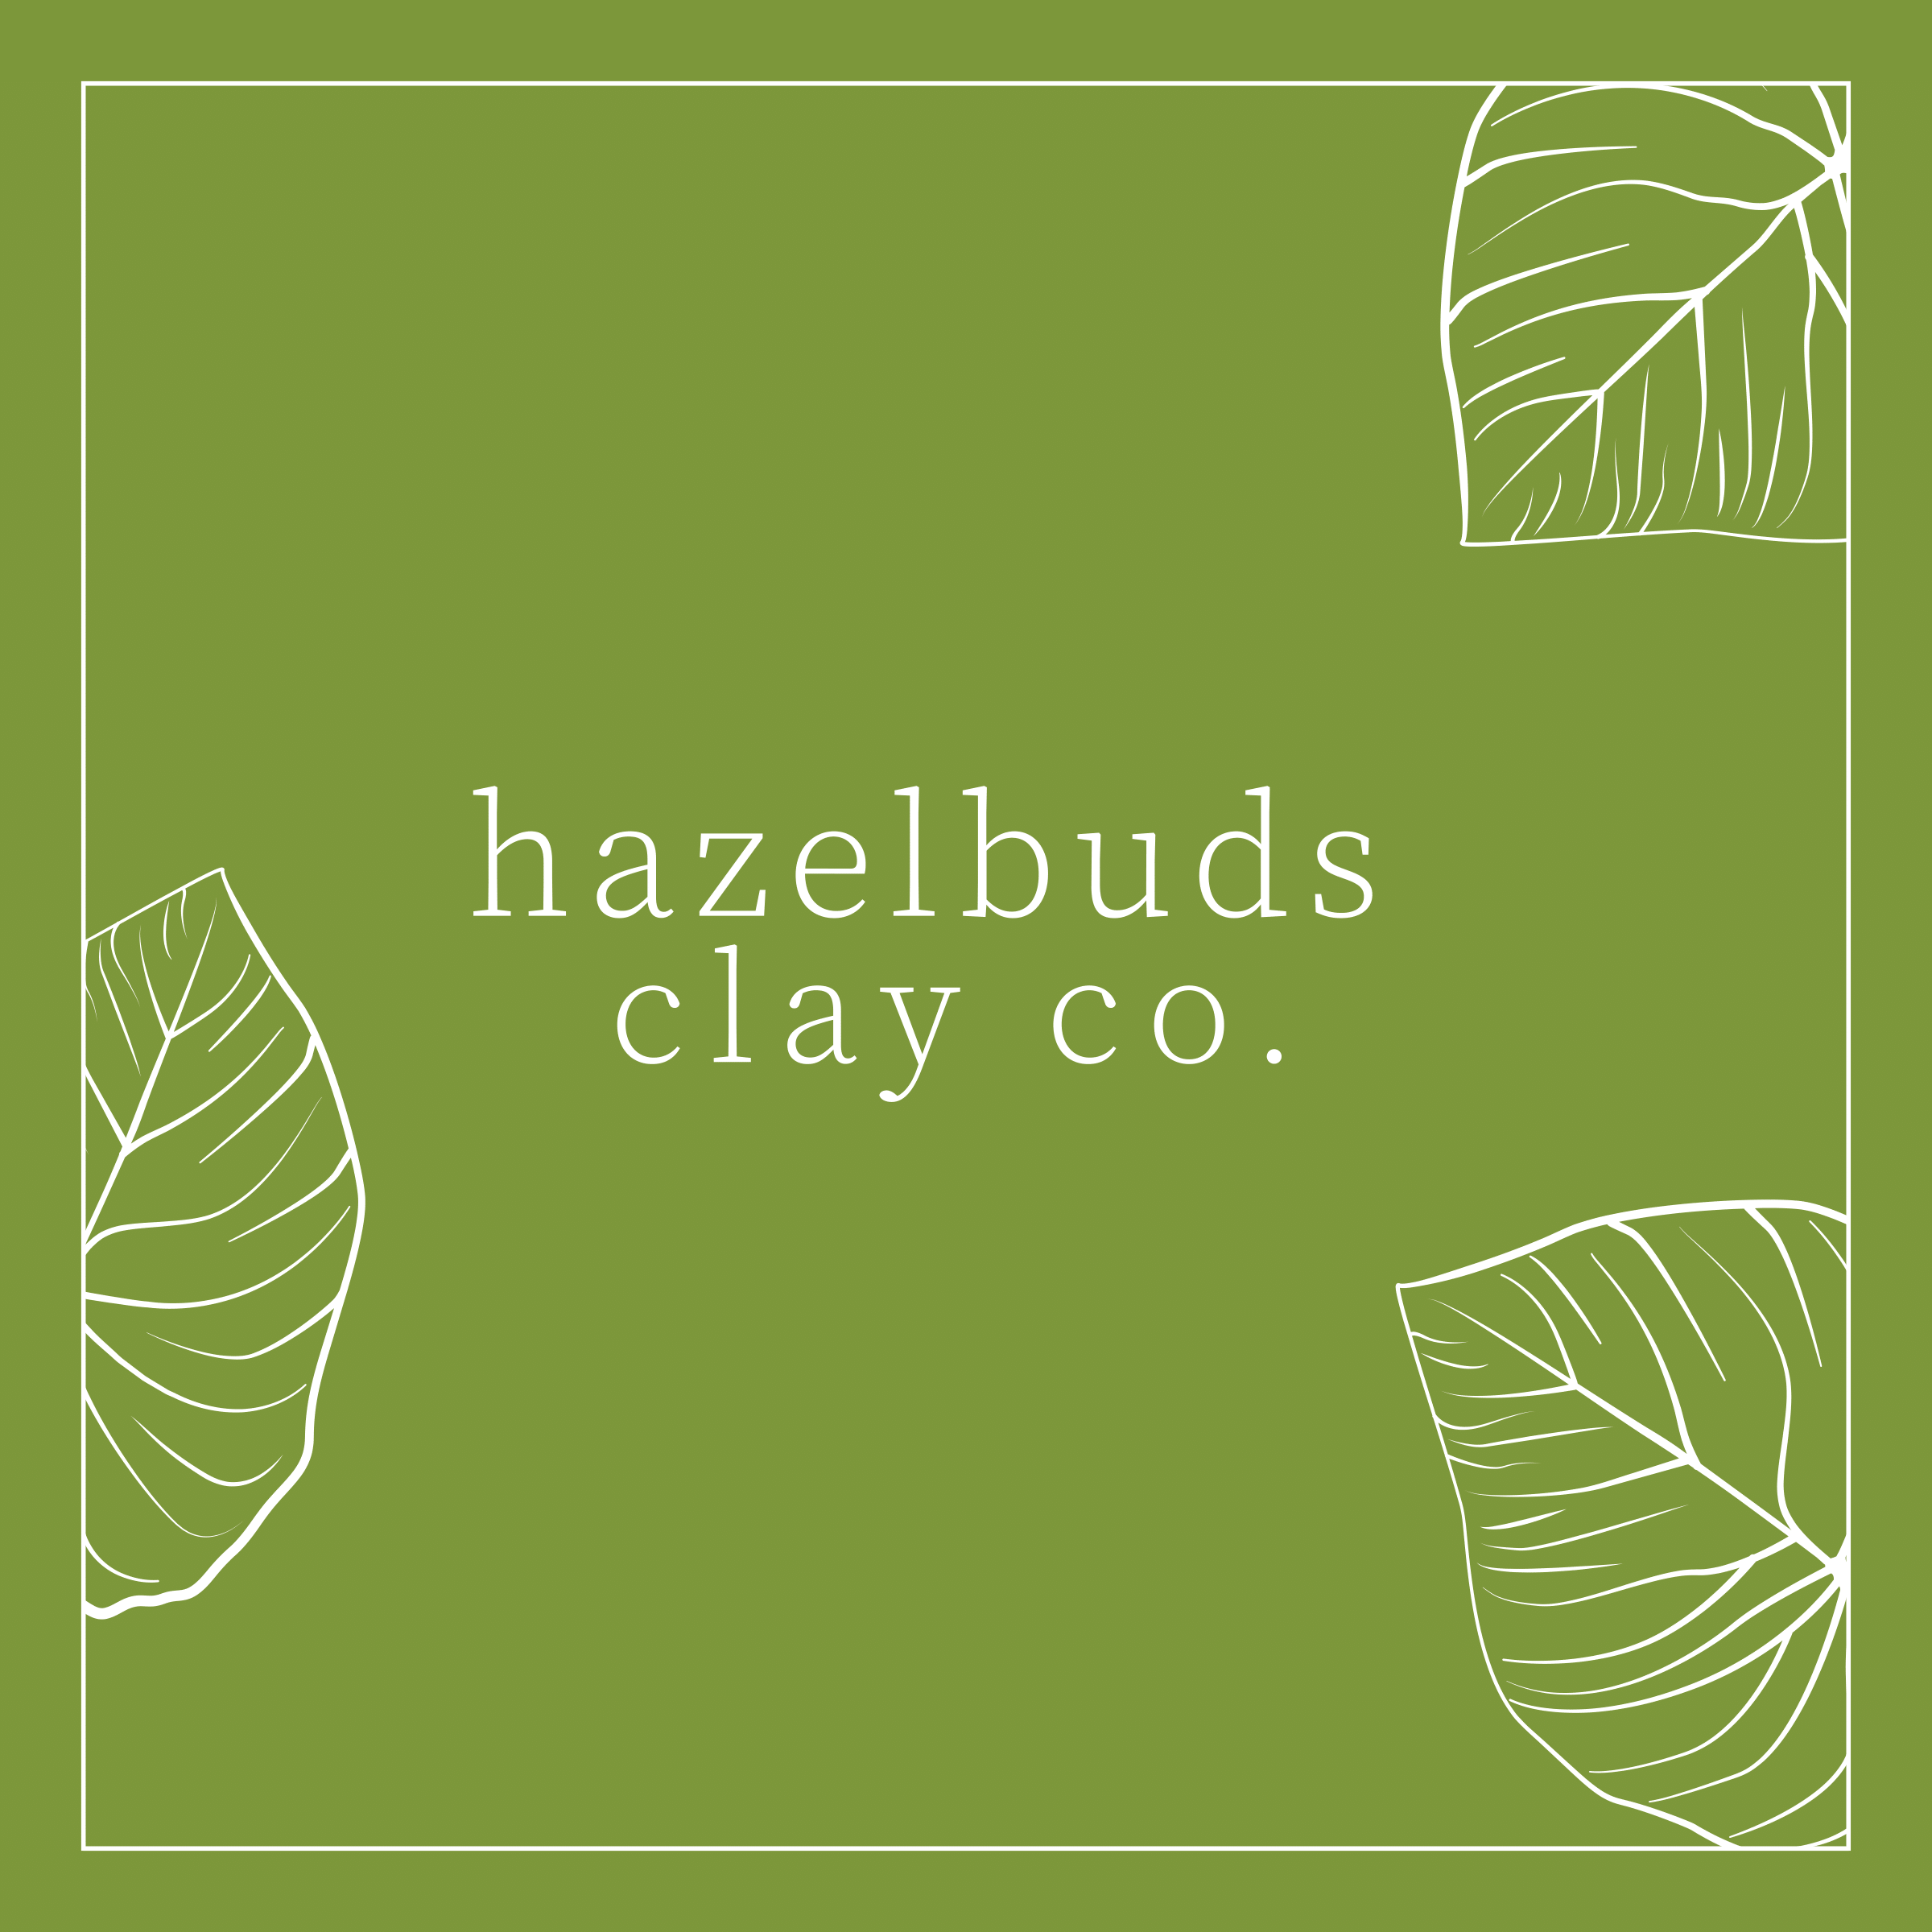 Hazelbuds Clay Co